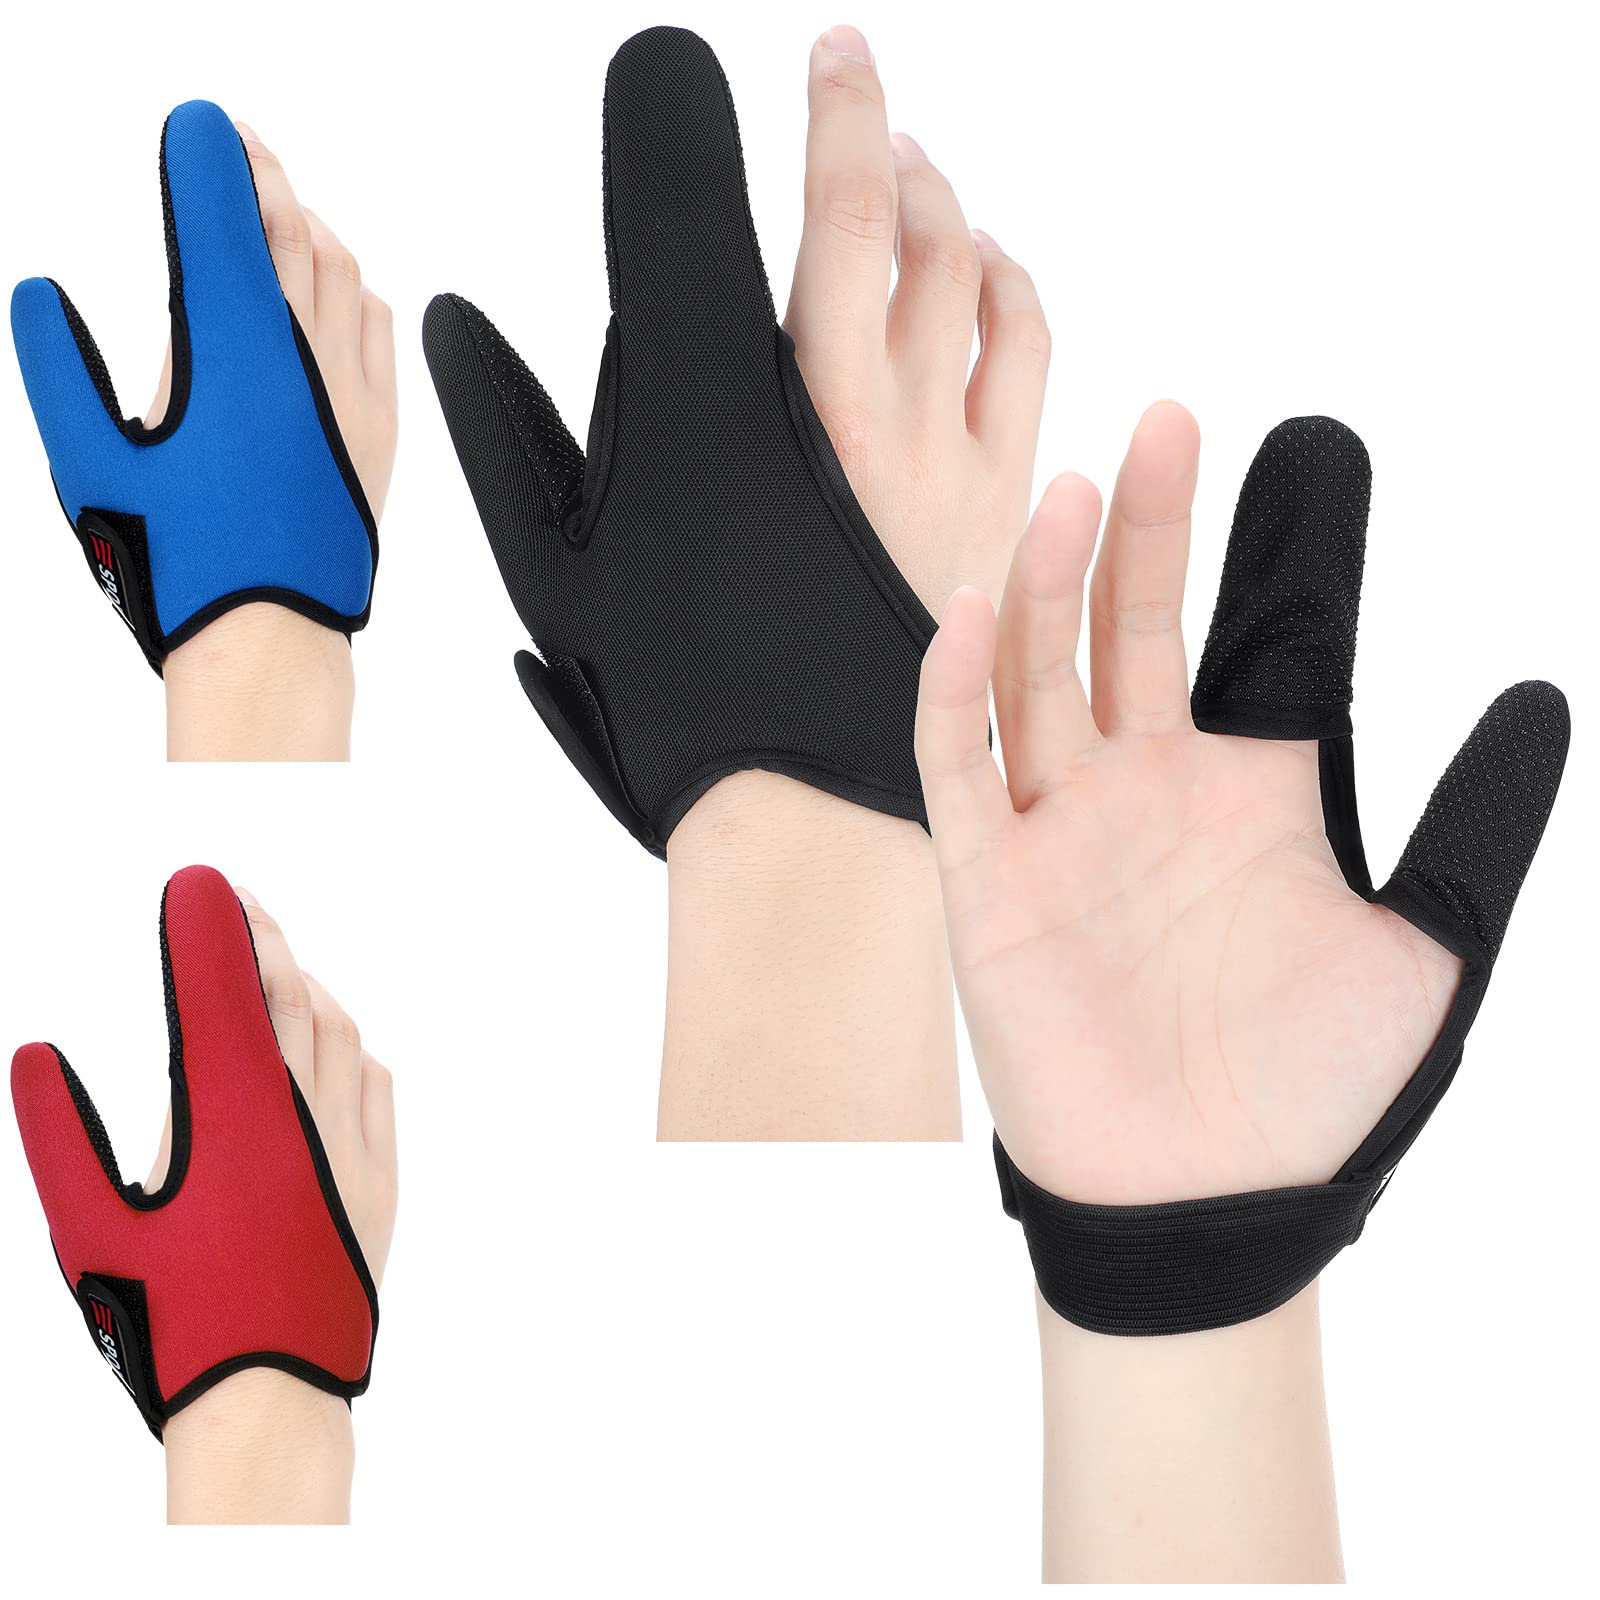 3 Pieces Neoprene Finger Glove for Men Women Fishing, Anti Slip